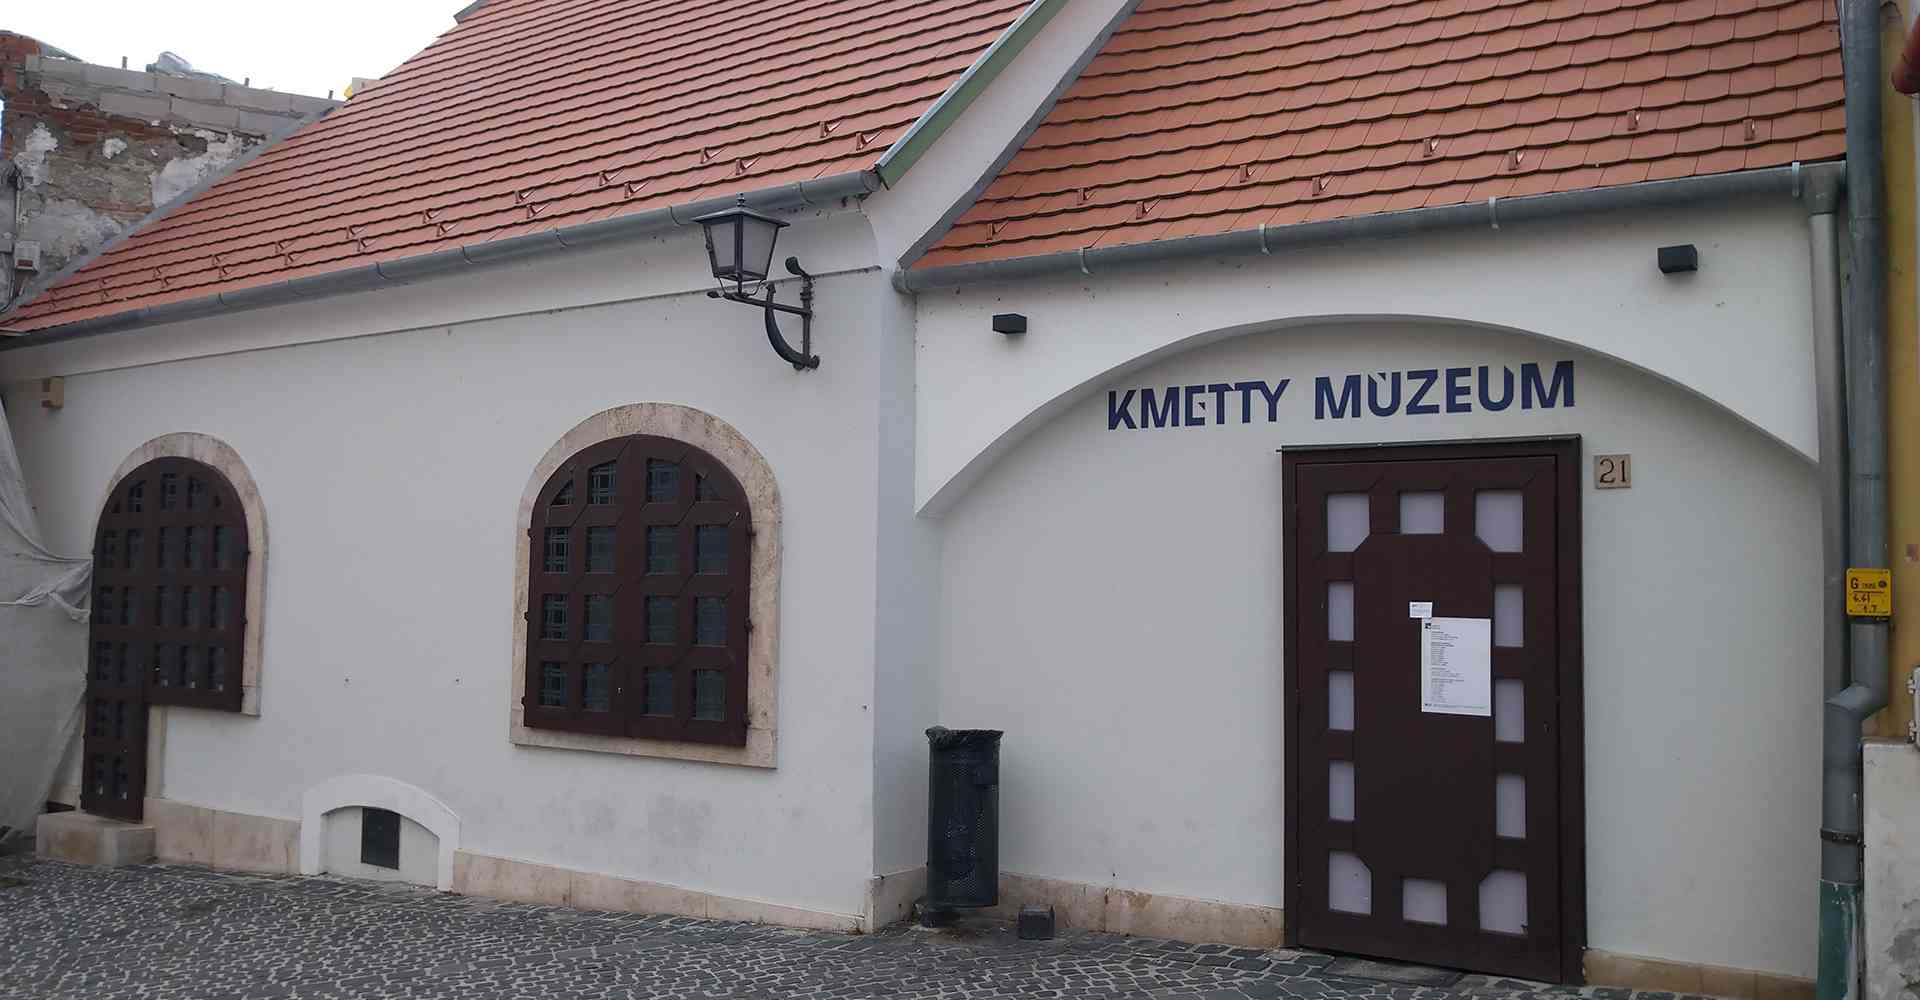 Szentendre_Őri-Art_Gallery_M6-Kmetty_Museum